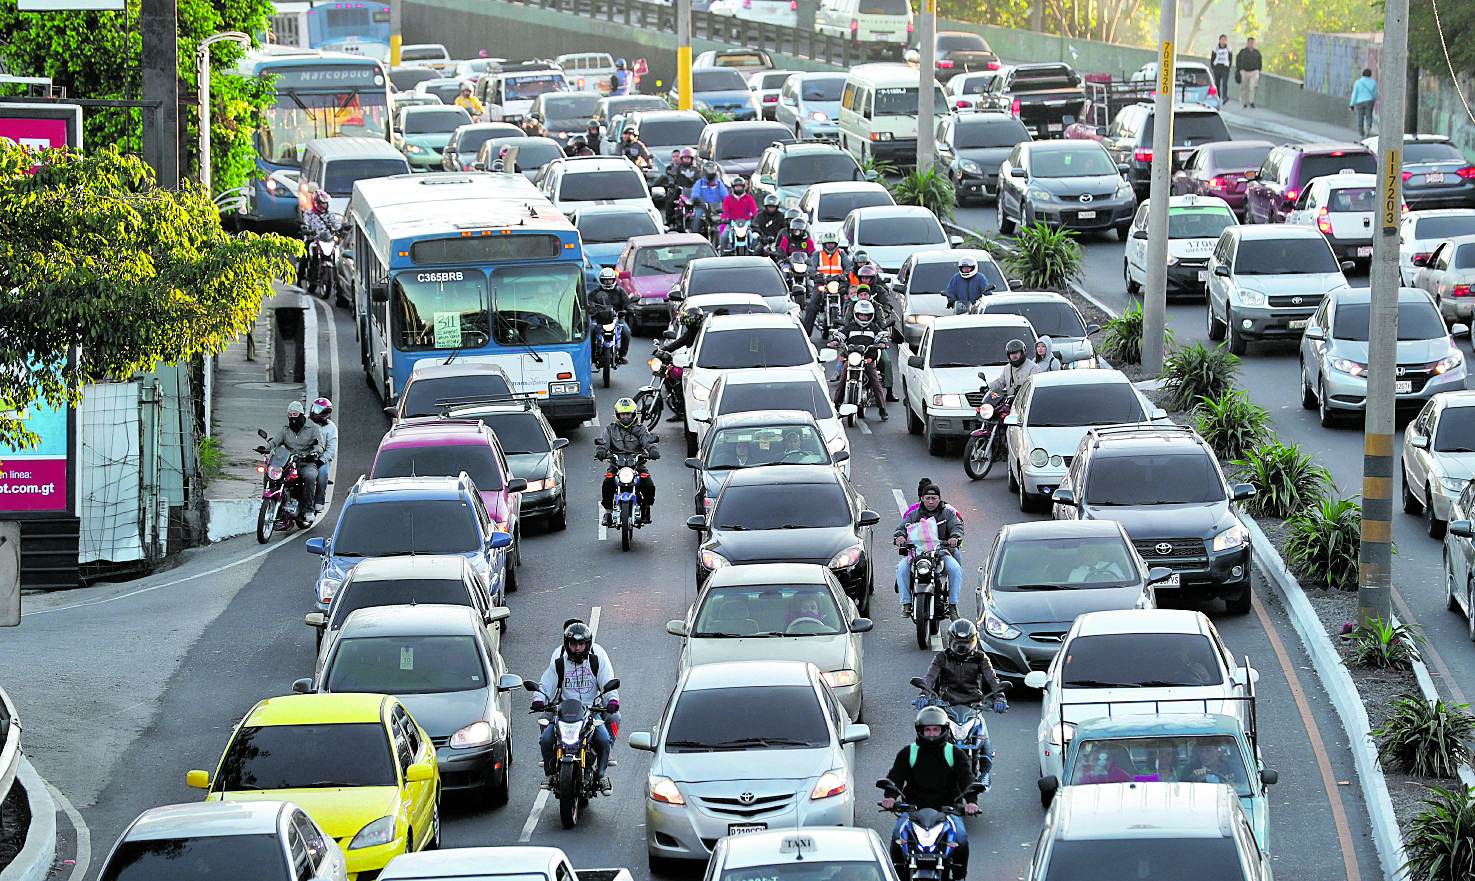 Desde los primeros días de diciembre se ha visto un aumento en la carga vehicular. (Foto Prensa Libre: Hemeroteca PL)